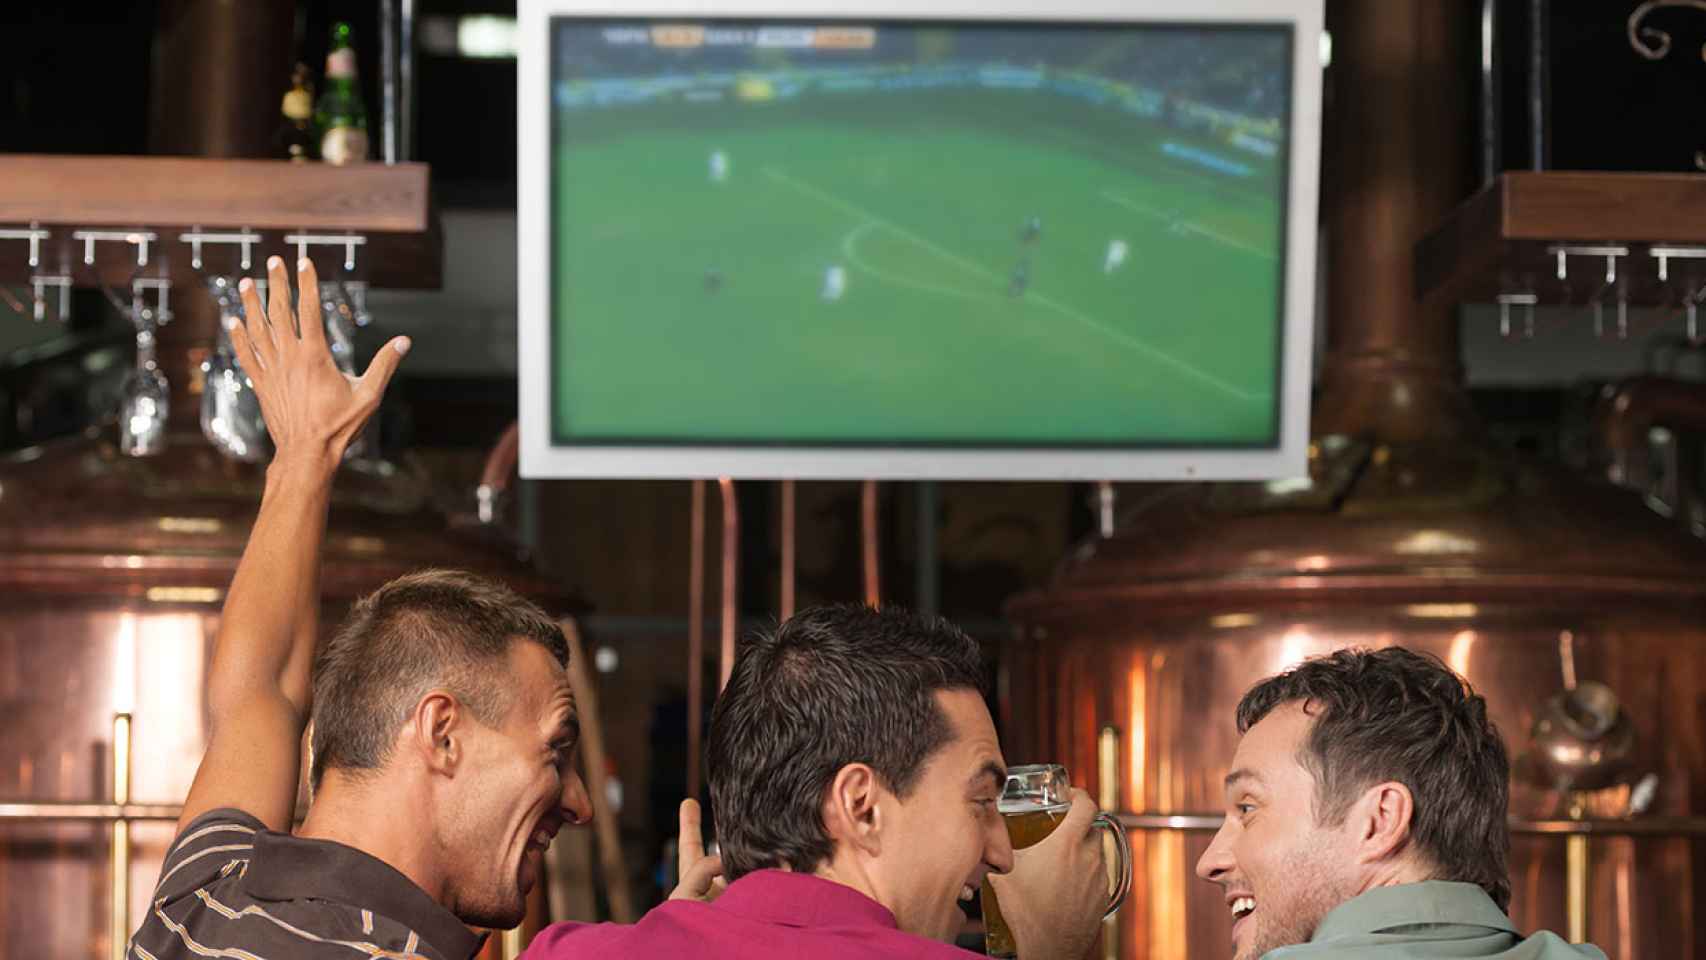 La Liga Profesional de Fútbol fue multada por la app que usaba el micrófono de los móviles para cazar bares en España con futbol 'pirata'.